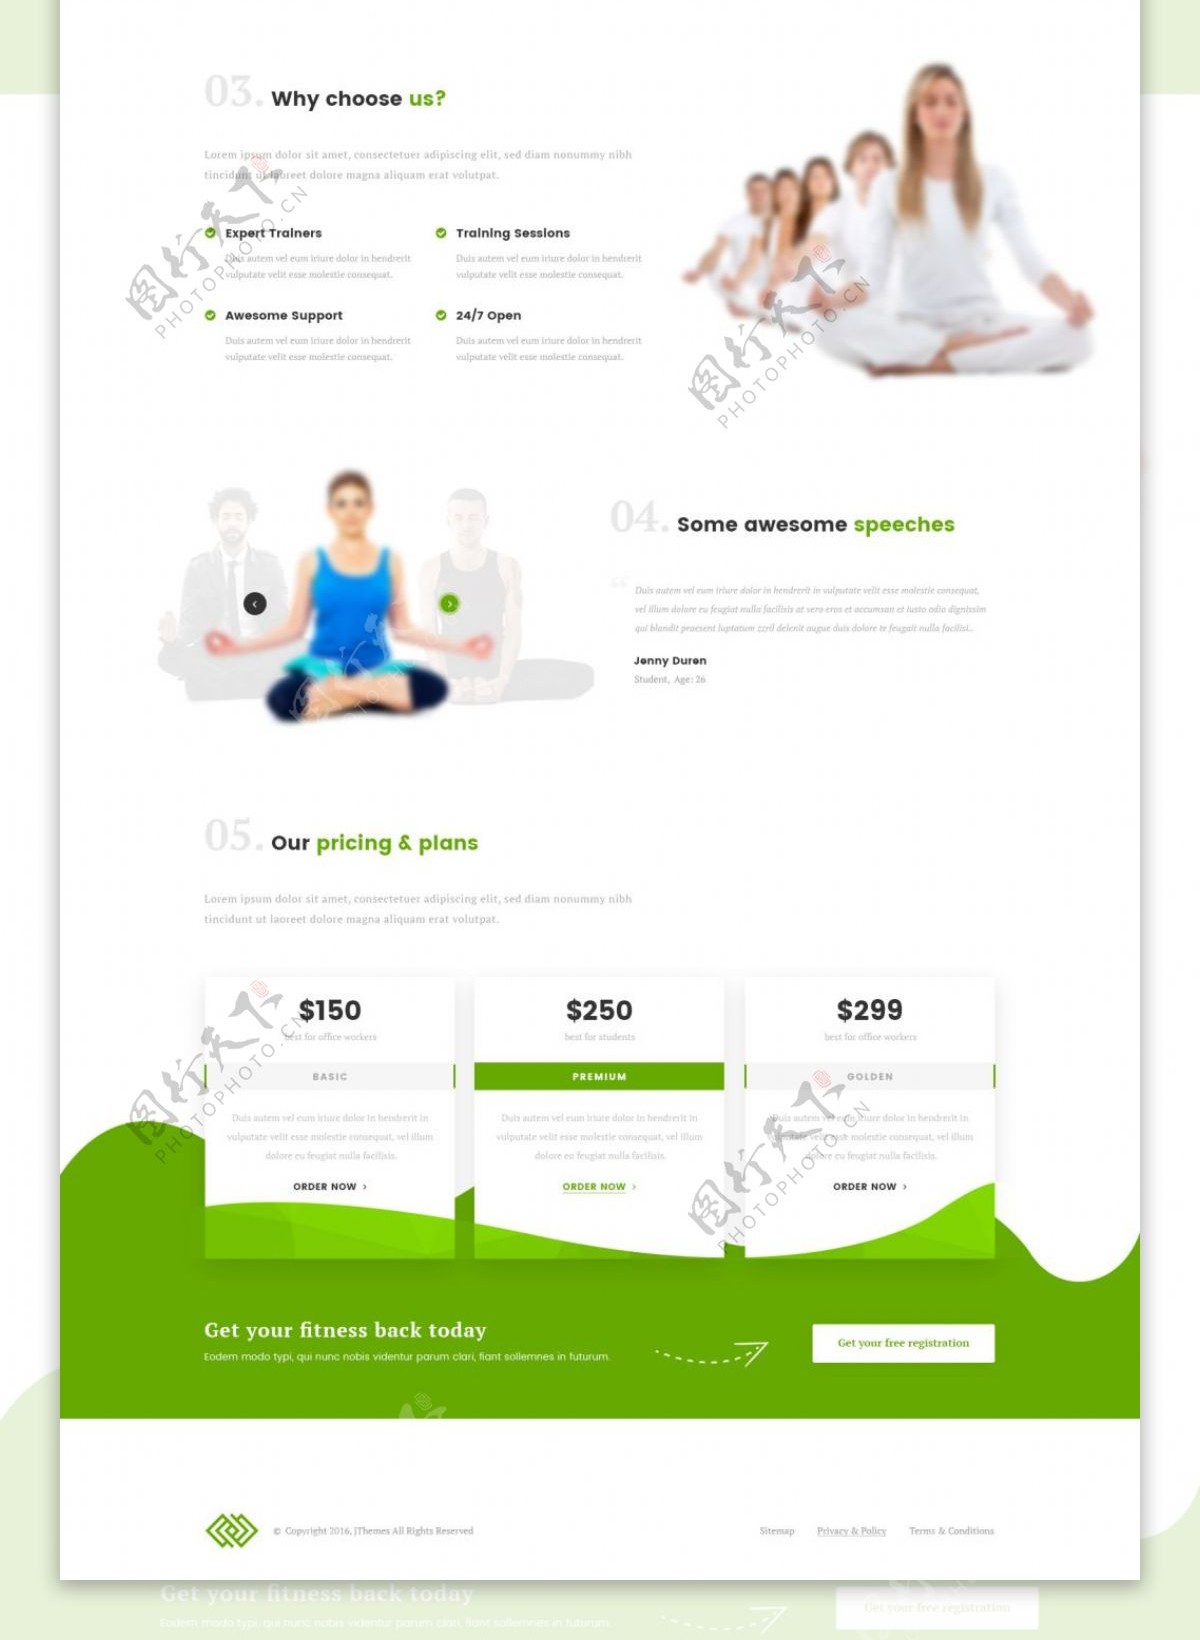 瑜伽网页模版设计